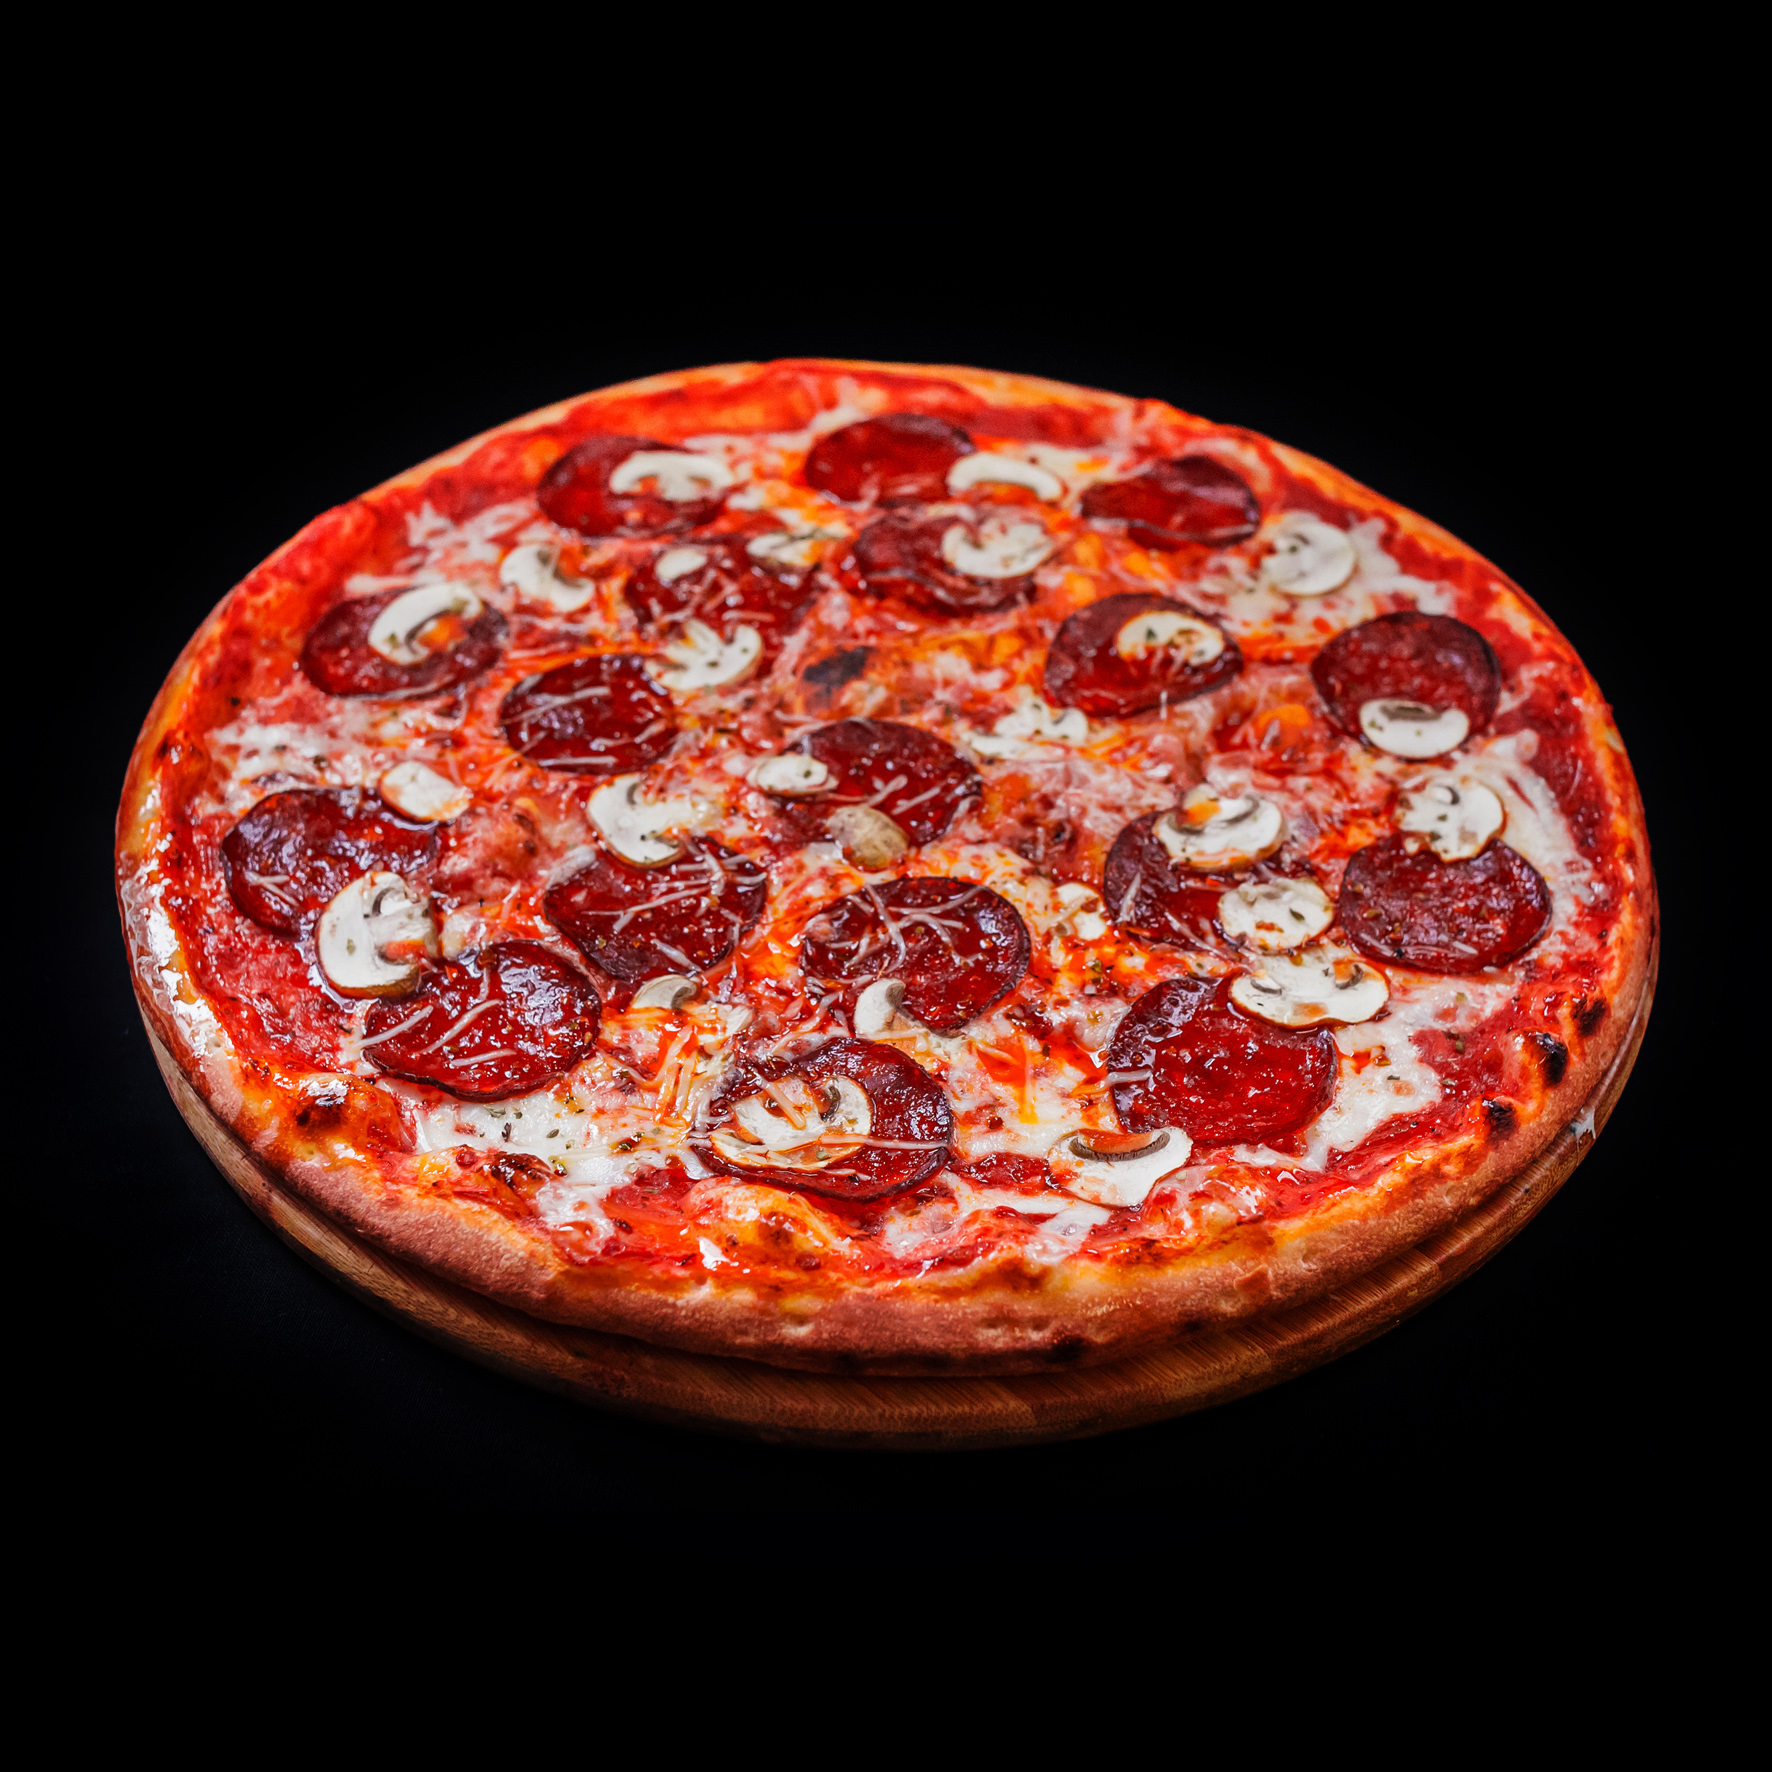 средняя стоимость пиццы пепперони фото 9